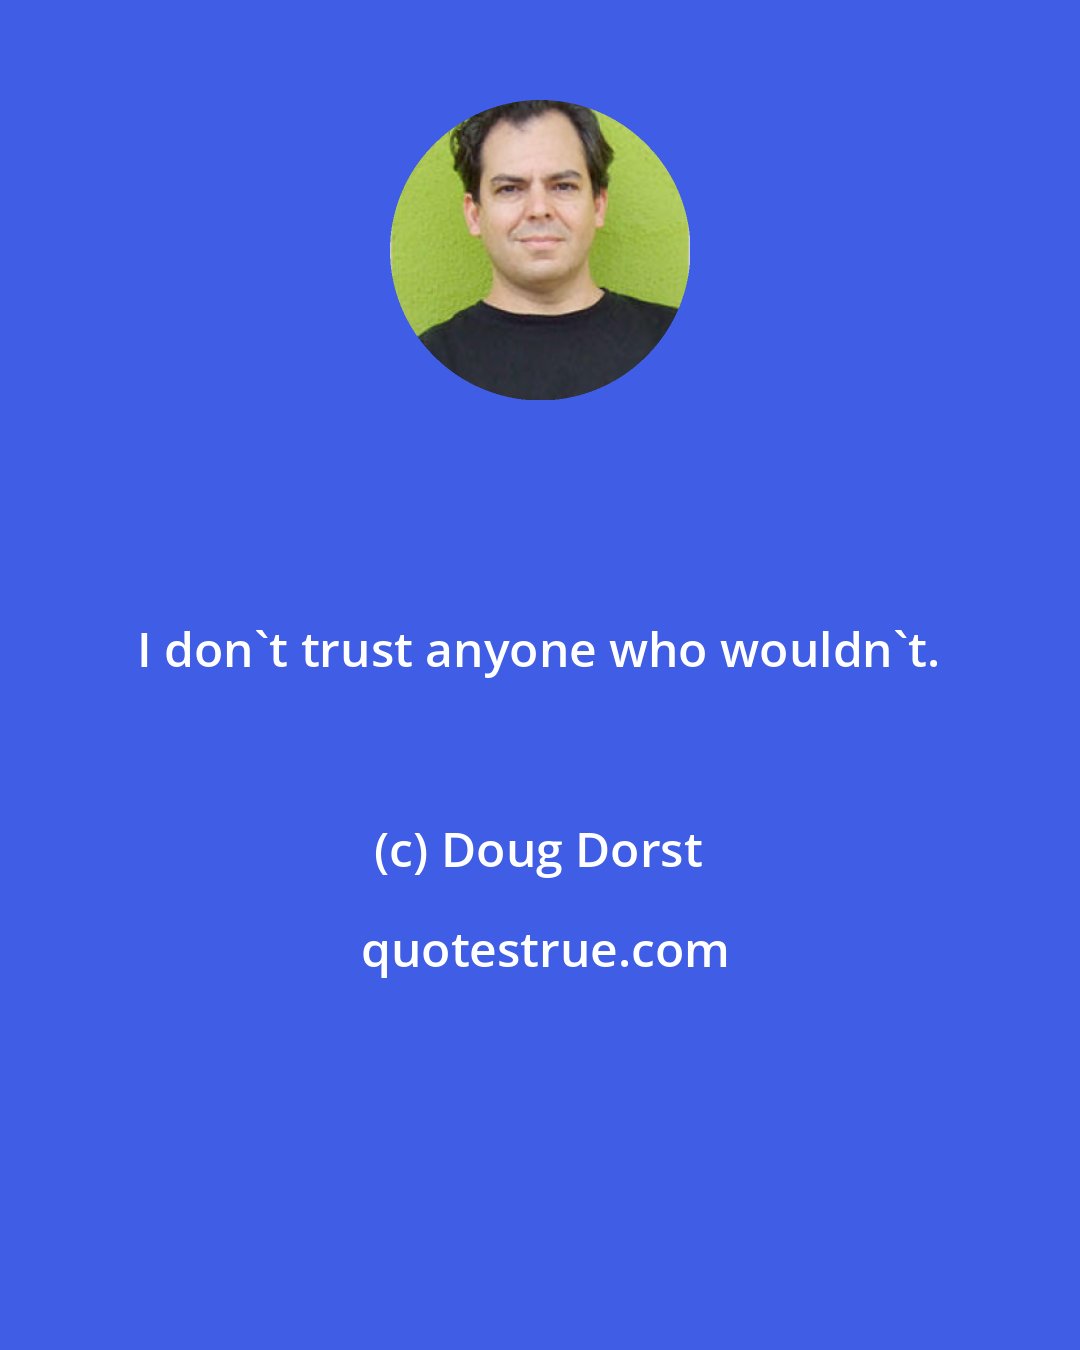 Doug Dorst: I don't trust anyone who wouldn't.